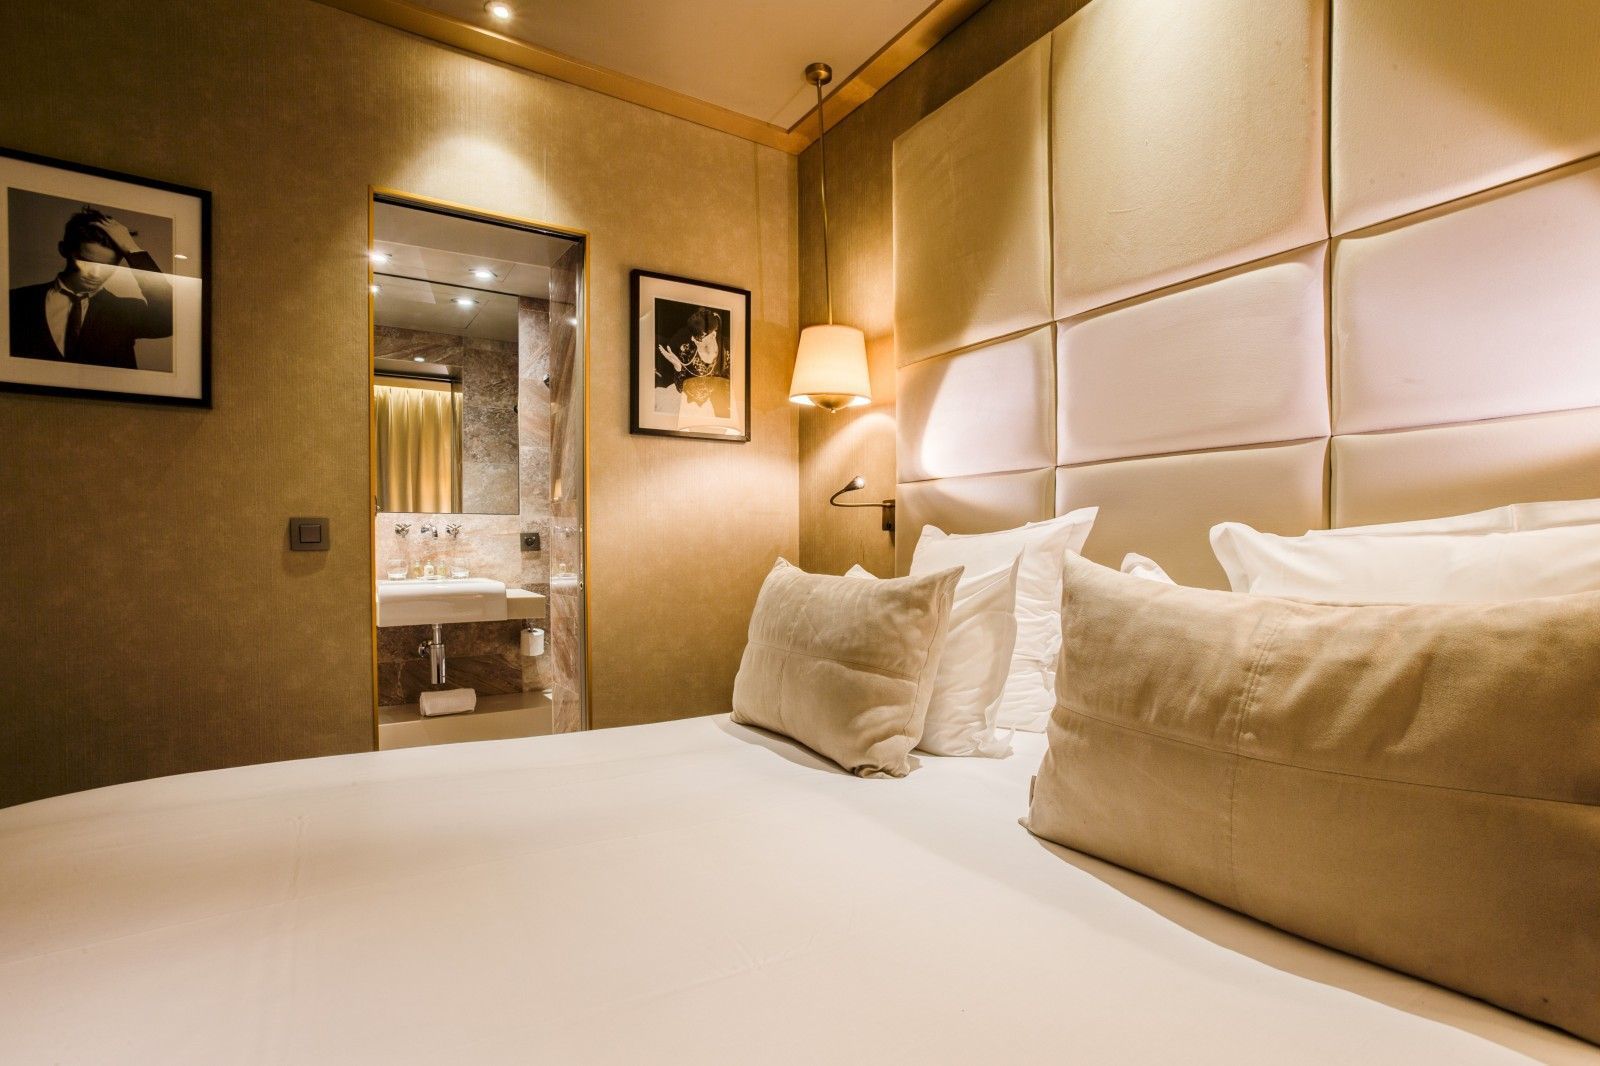 Hôtel Armoni Paris -  Zimmer mit Verbindungstür - Mayfair zwei Doppelzimmer